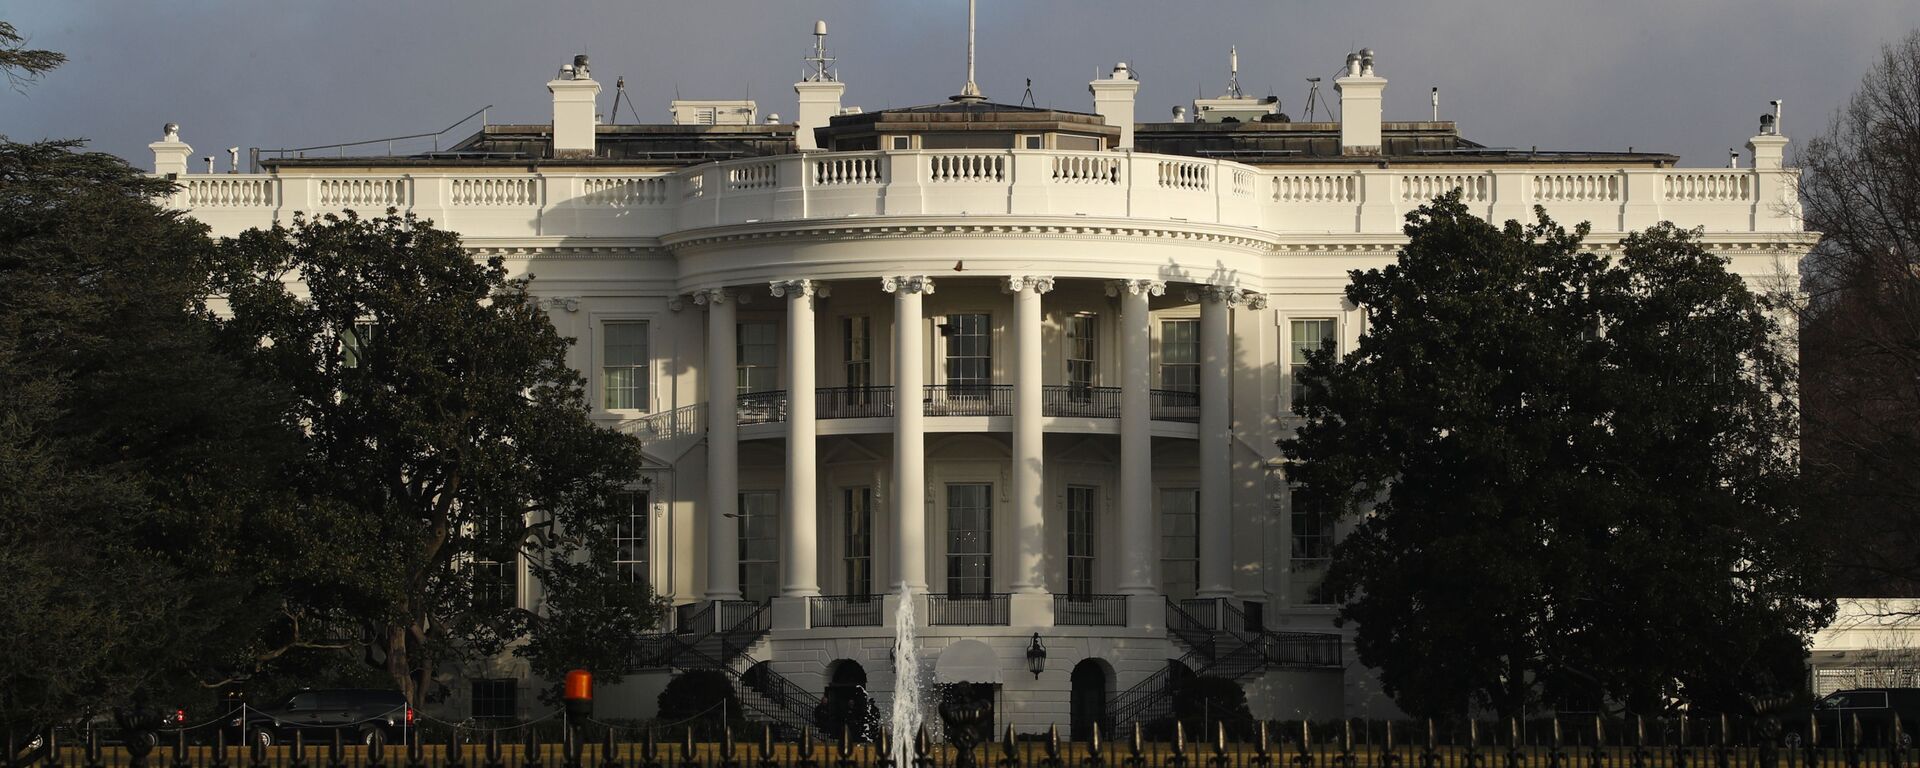 Официальная резиденция президента США - Белый дом - Sputnik Армения, 1920, 22.04.2021